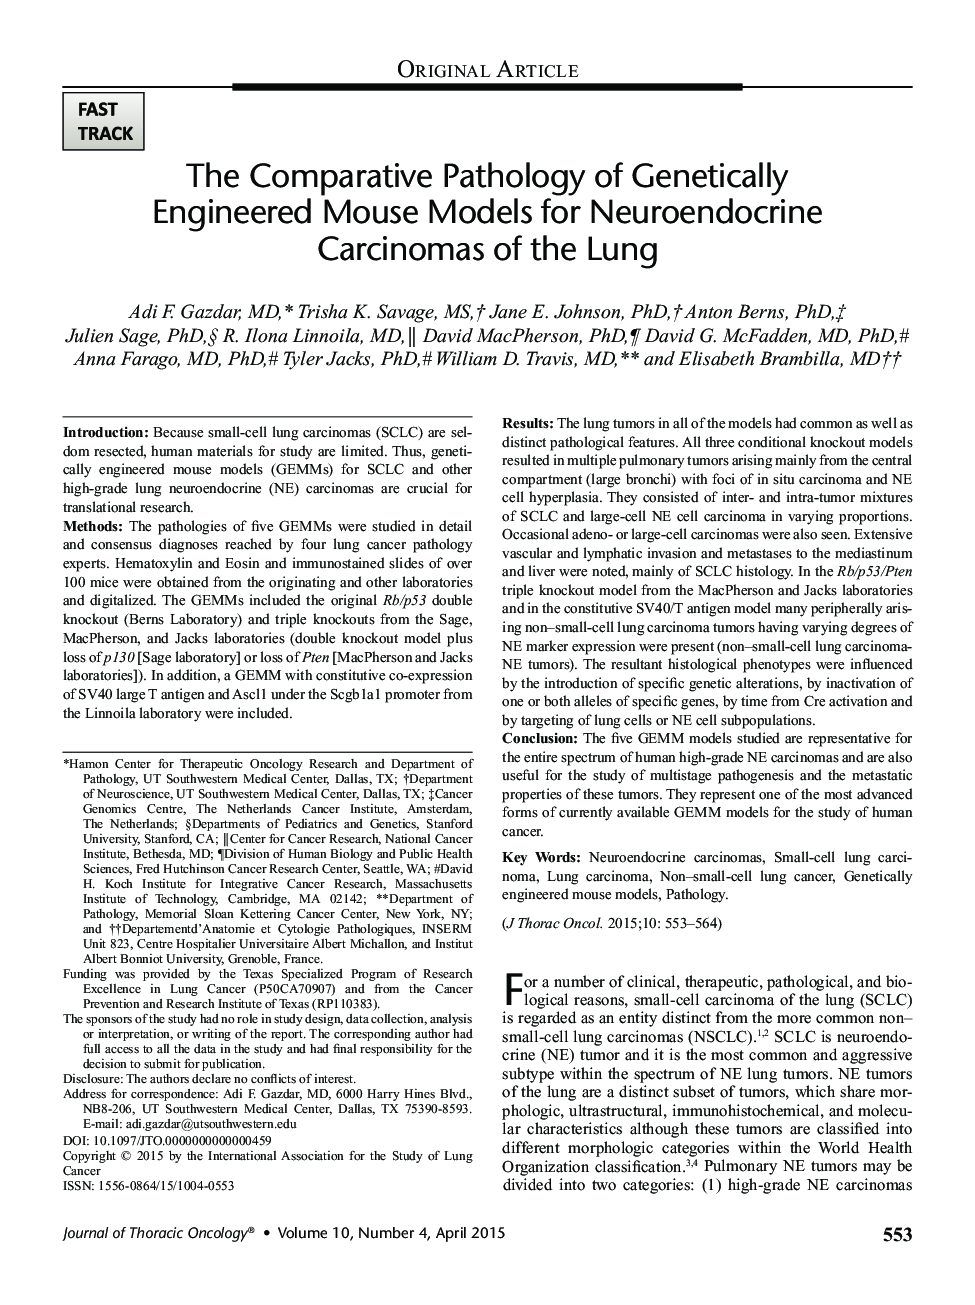 آسیب شناسی مقایسه ای از مدل های موس مدل سازی شده ژنتیکی برای کارسینوم های نوروندیکریک ریه 